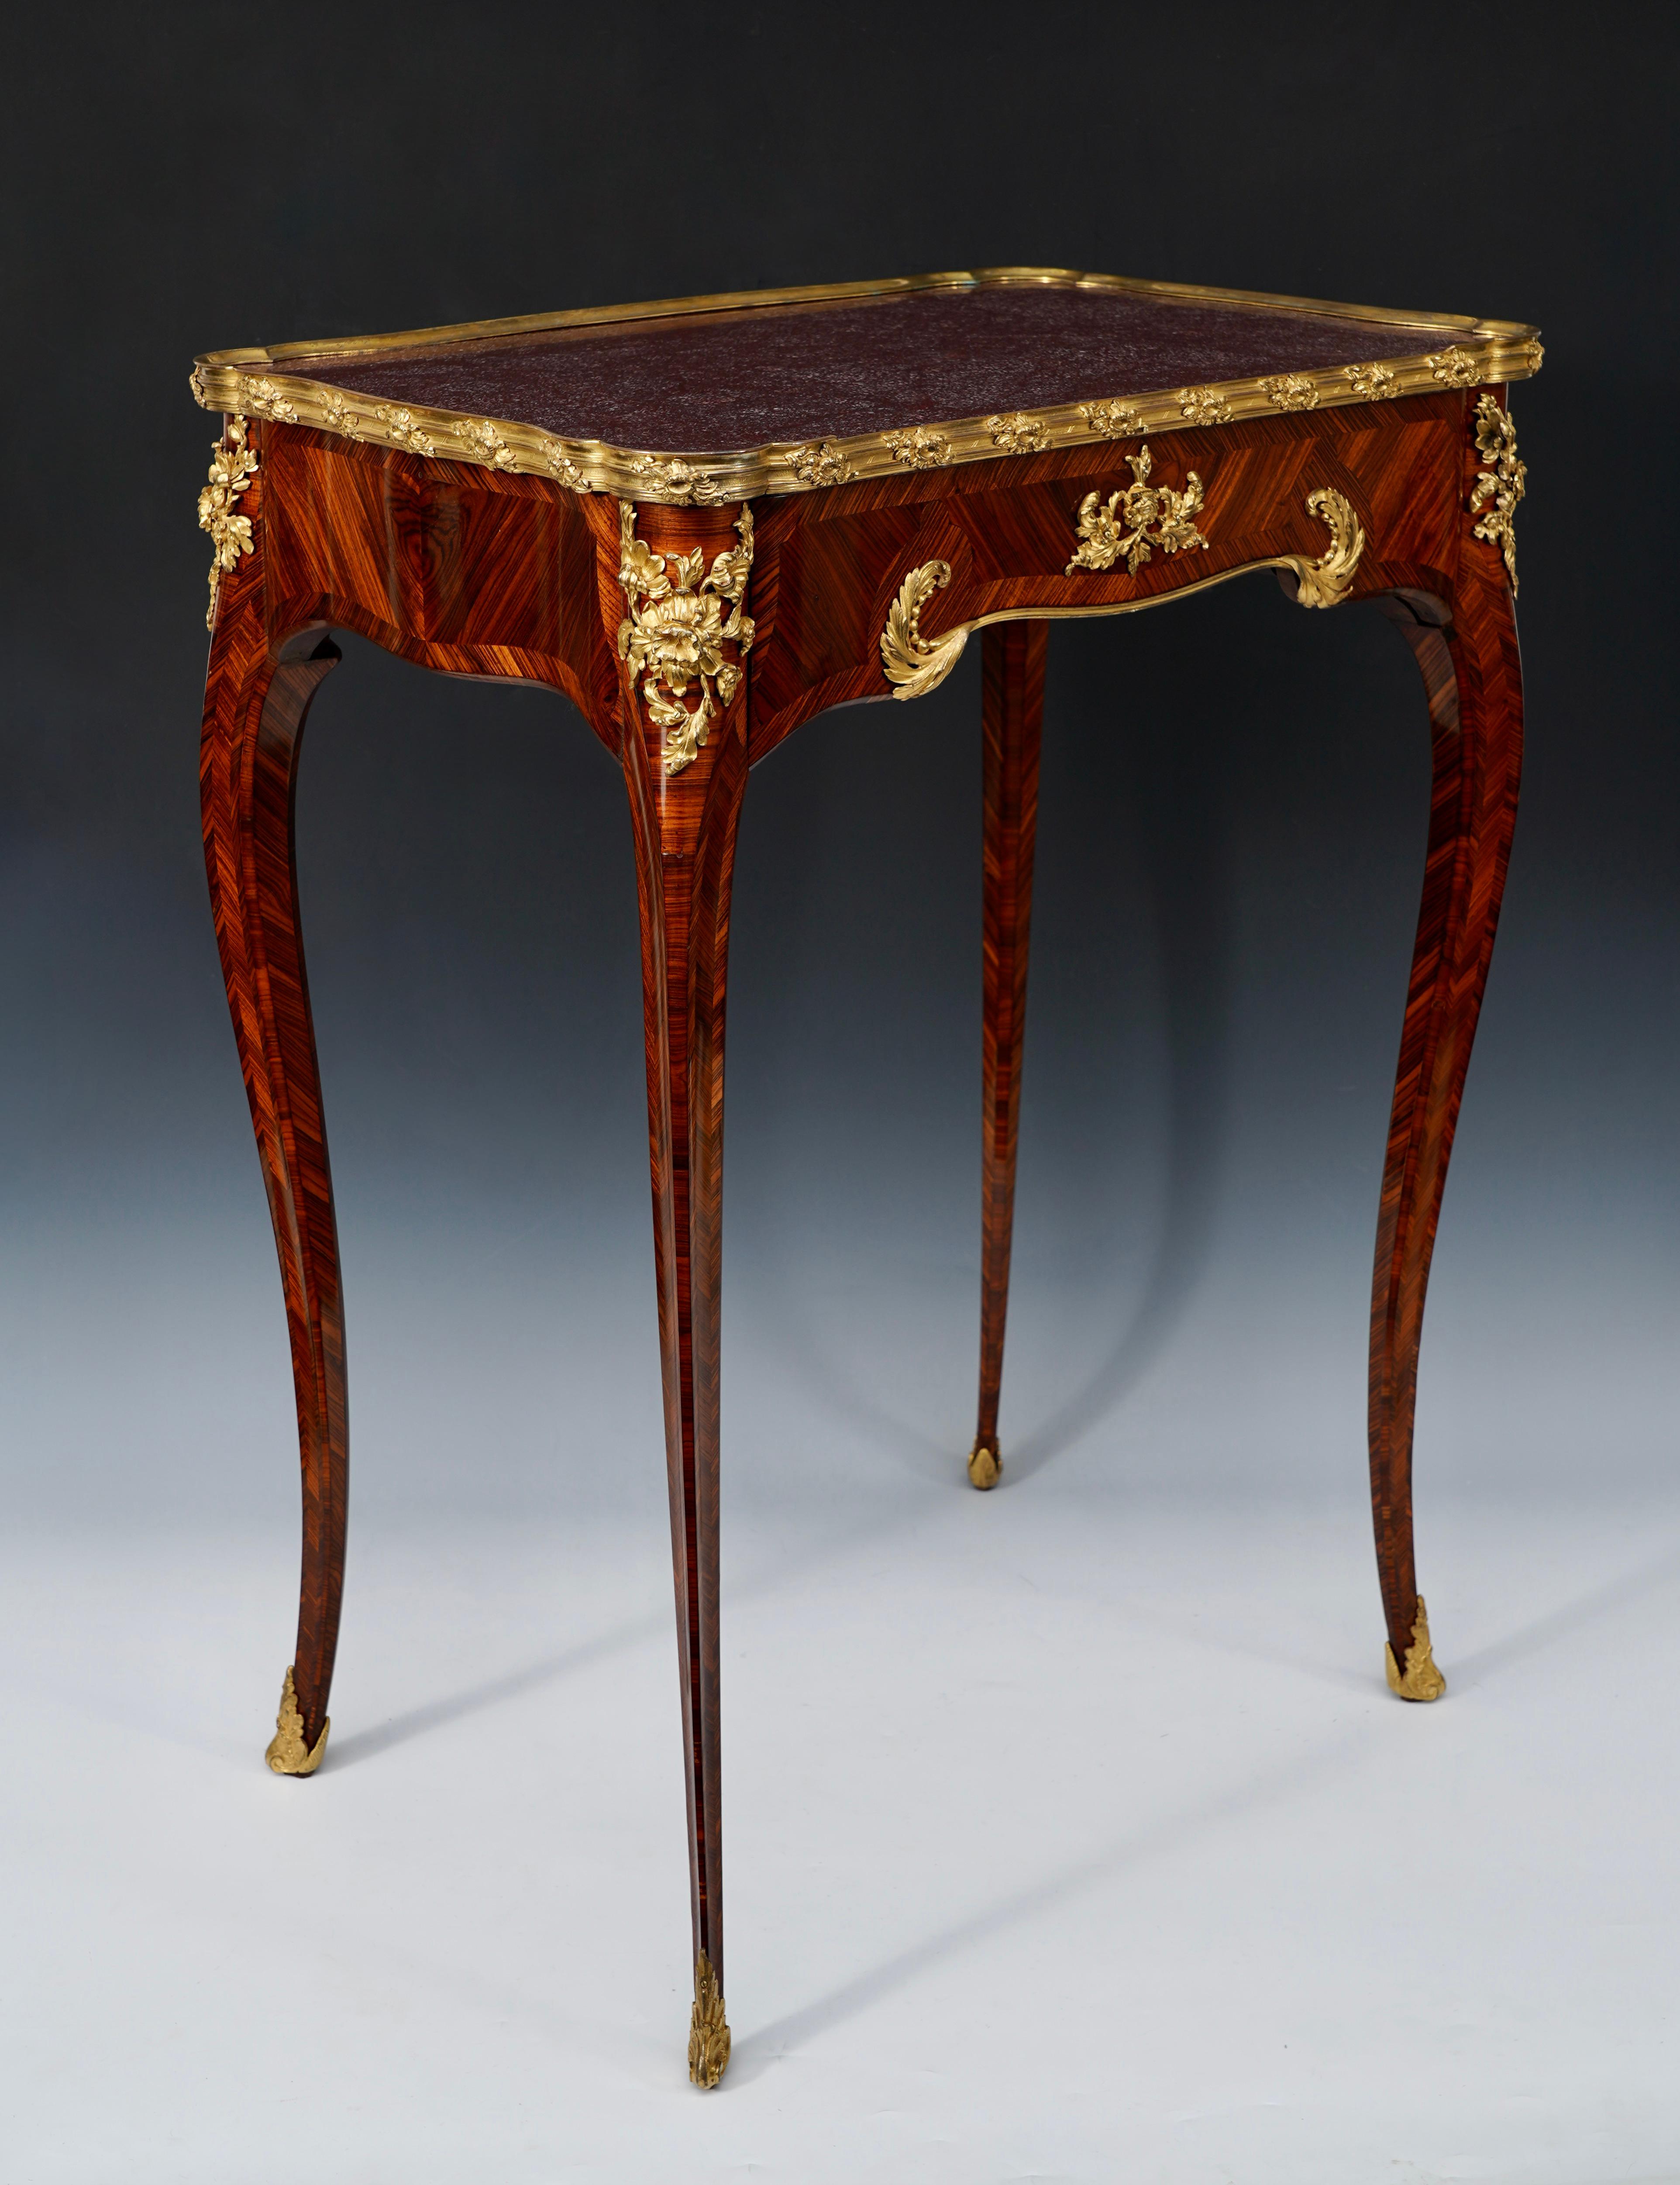 Gestempelt H. Nelson

Charmanter, von Louis XV inspirierter Schreibtisch in Wellenform aus Königsholzfurnier, verziert mit einer feinen vergoldeten und ziselierten Bronzefassung. Das Tablett, das von einer vergoldeten Bronzeform umgeben ist, ist mit